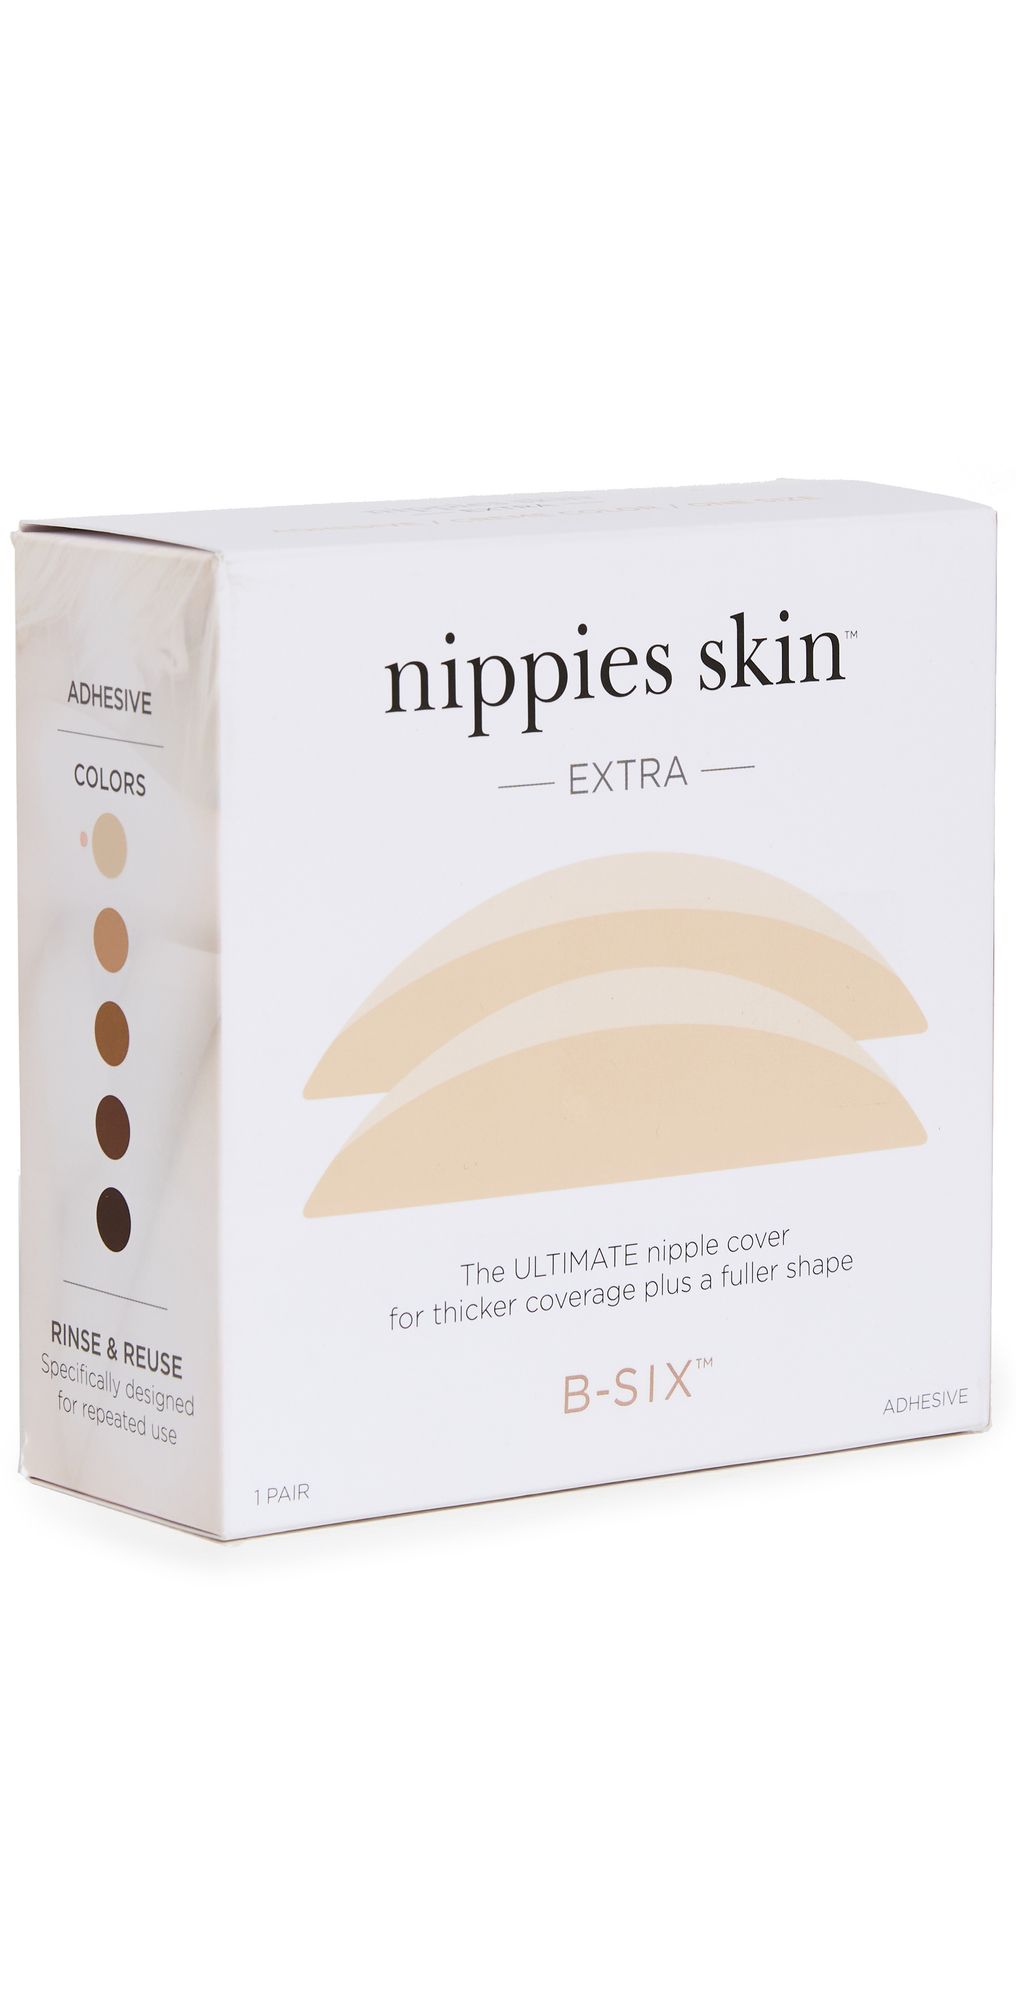 Nippies Skin Plus | Shopbop